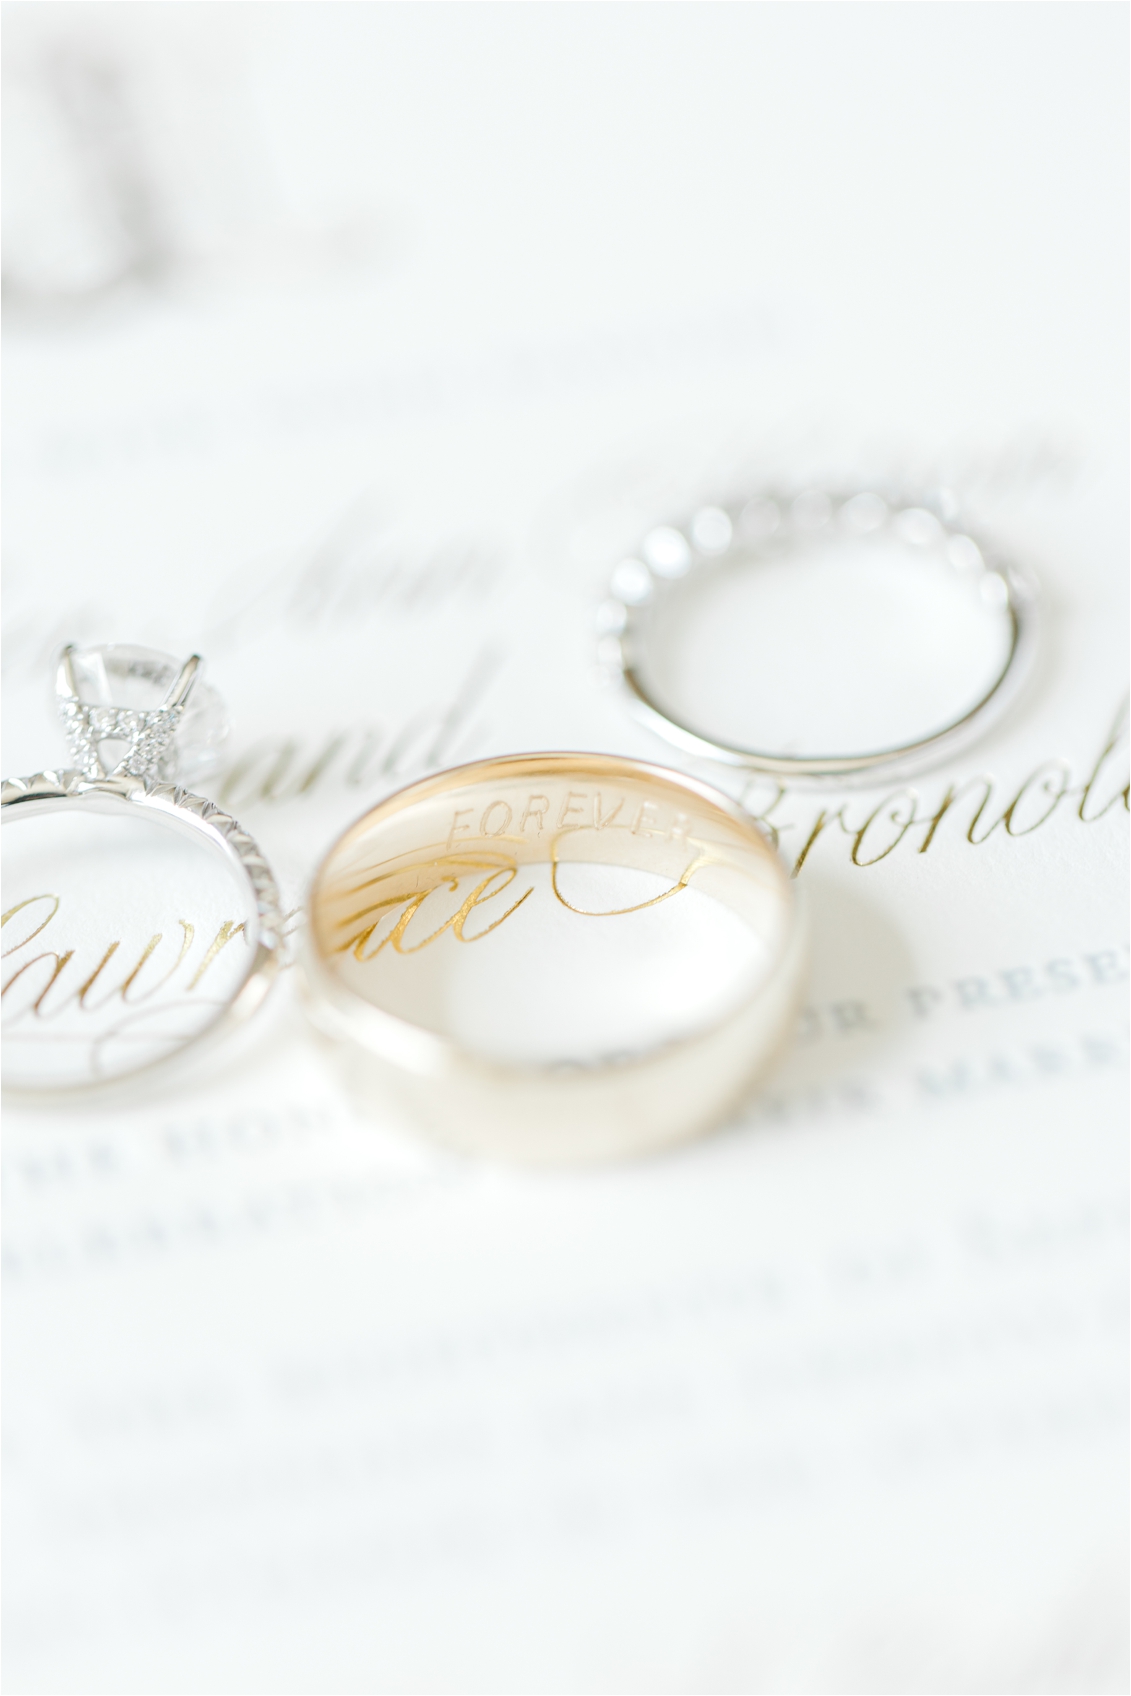 wedding rings, enscribed groom's ring